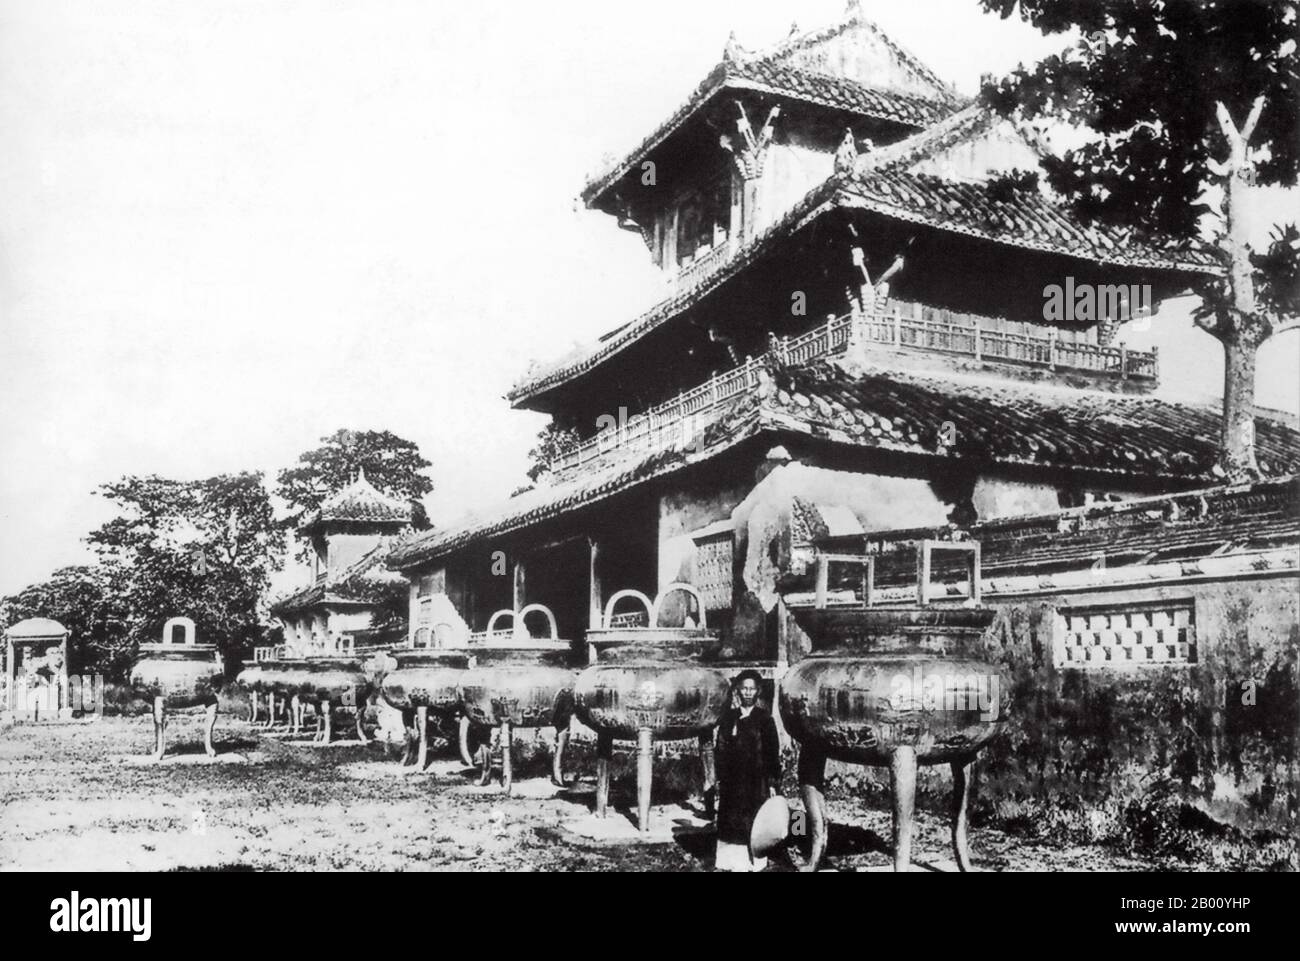 Vietnam: Bronzegurnen der GIA Long Dynasty (neun dynastische Urnen) vor Hien Lam, Hue (Anfang des 20th. Jahrhunderts). Hien Lam ist ein Denkmal, das zur Erinnerung an die Nguyen-Dynastie in der Zitadelle von Hue errichtet wurde. Es wurde 1821-2 während der Herrschaft von Kaiser Minh Mang (1791-1841) gebaut. Der Schrein ist 17m hoch und damit das höchste Bauwerk in der Zitadelle. Stockfoto